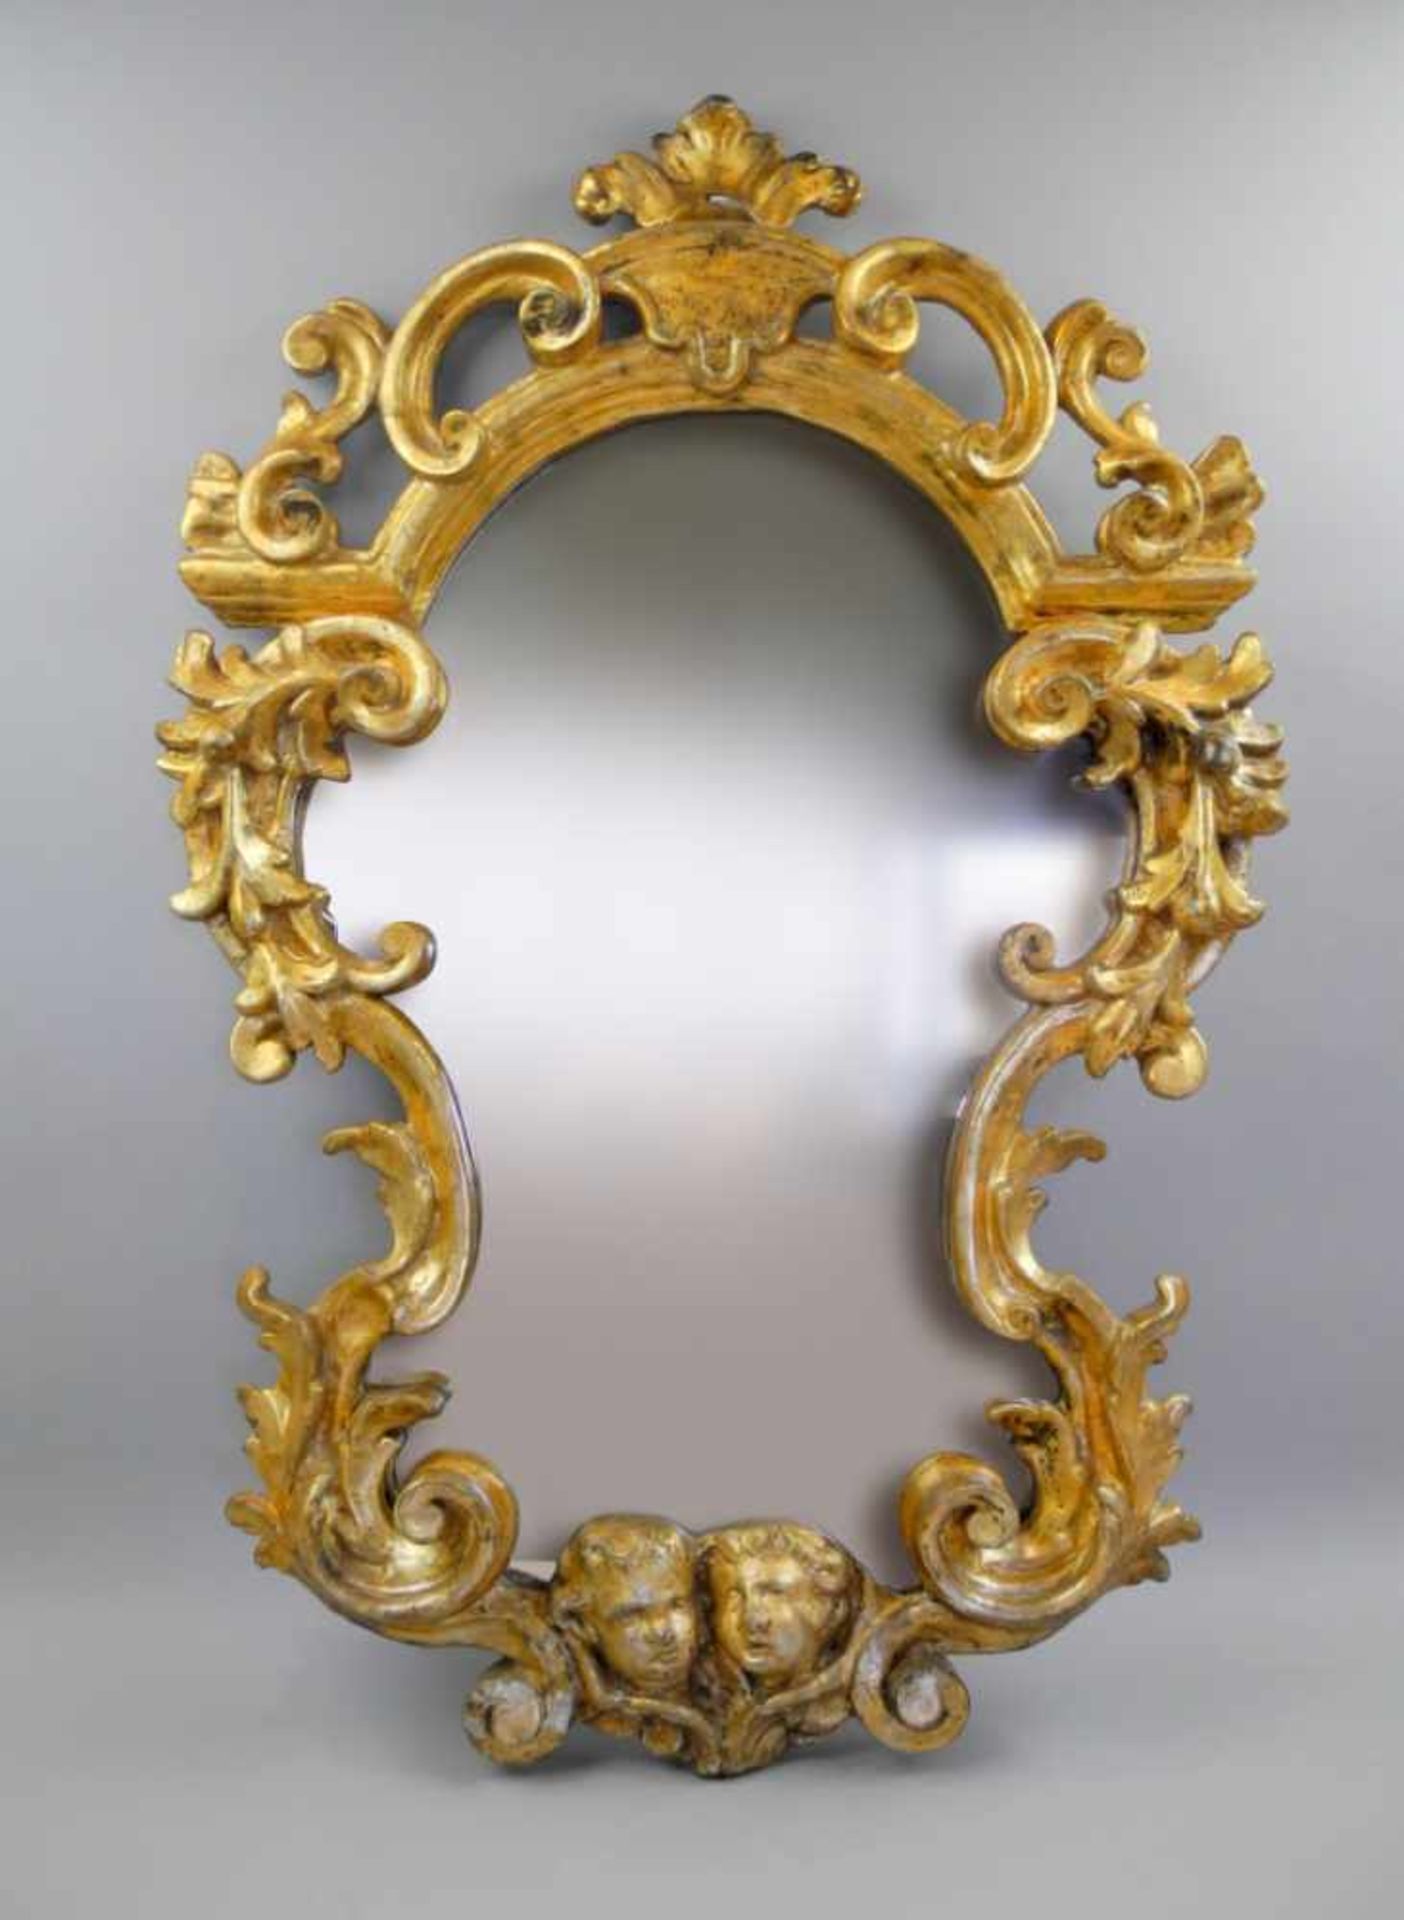 Barocker Spiegel mit PuttiHolz geschnitzt und Gold gefasst. Gute Erhaltung. Italien, 18. Jh. H x B